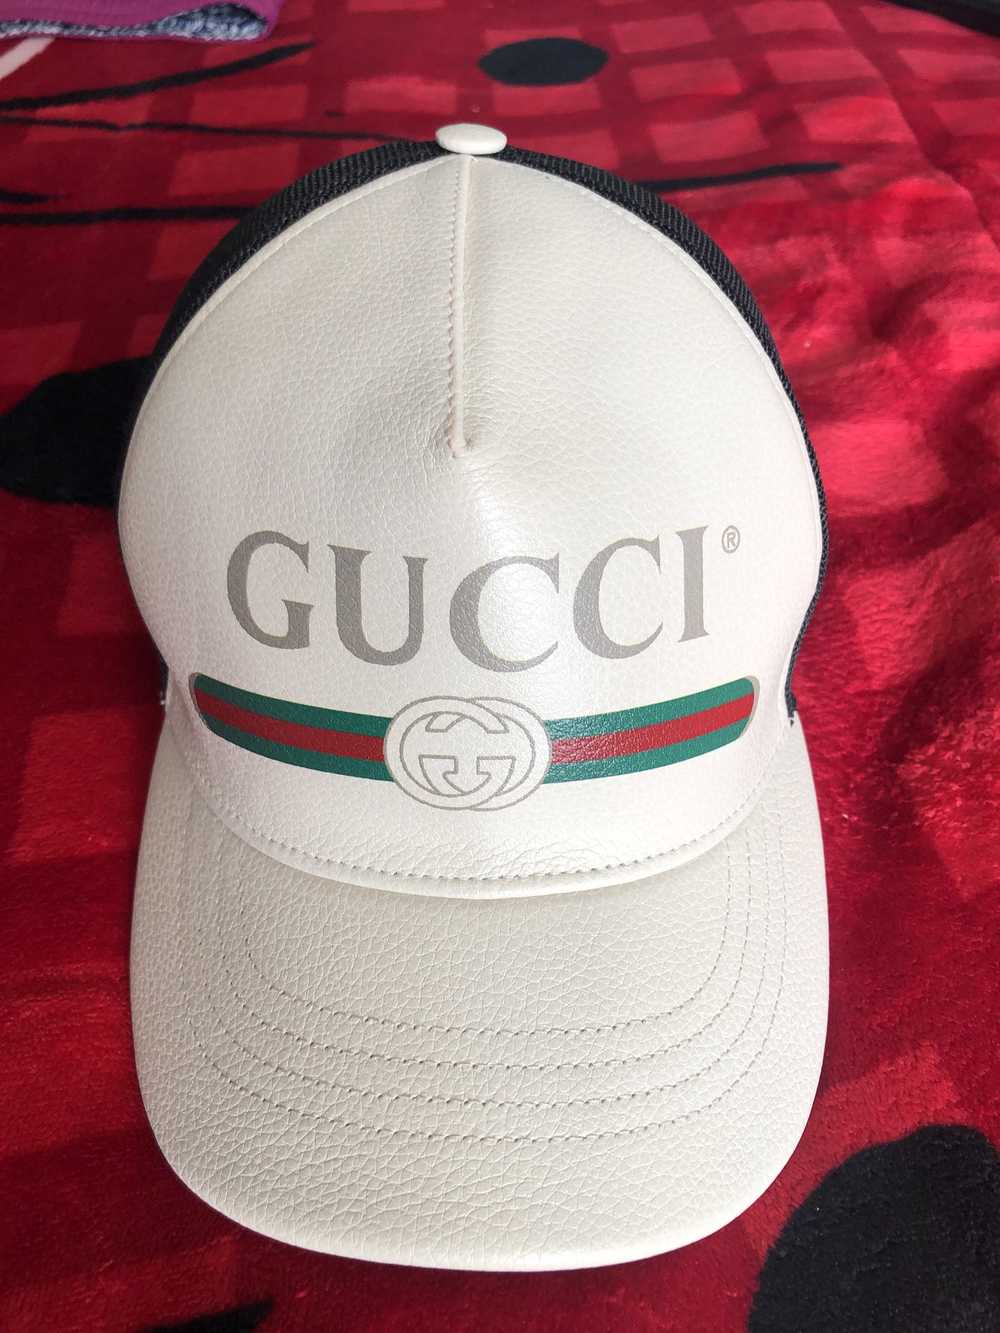 Gucci Gucci hat - image 1